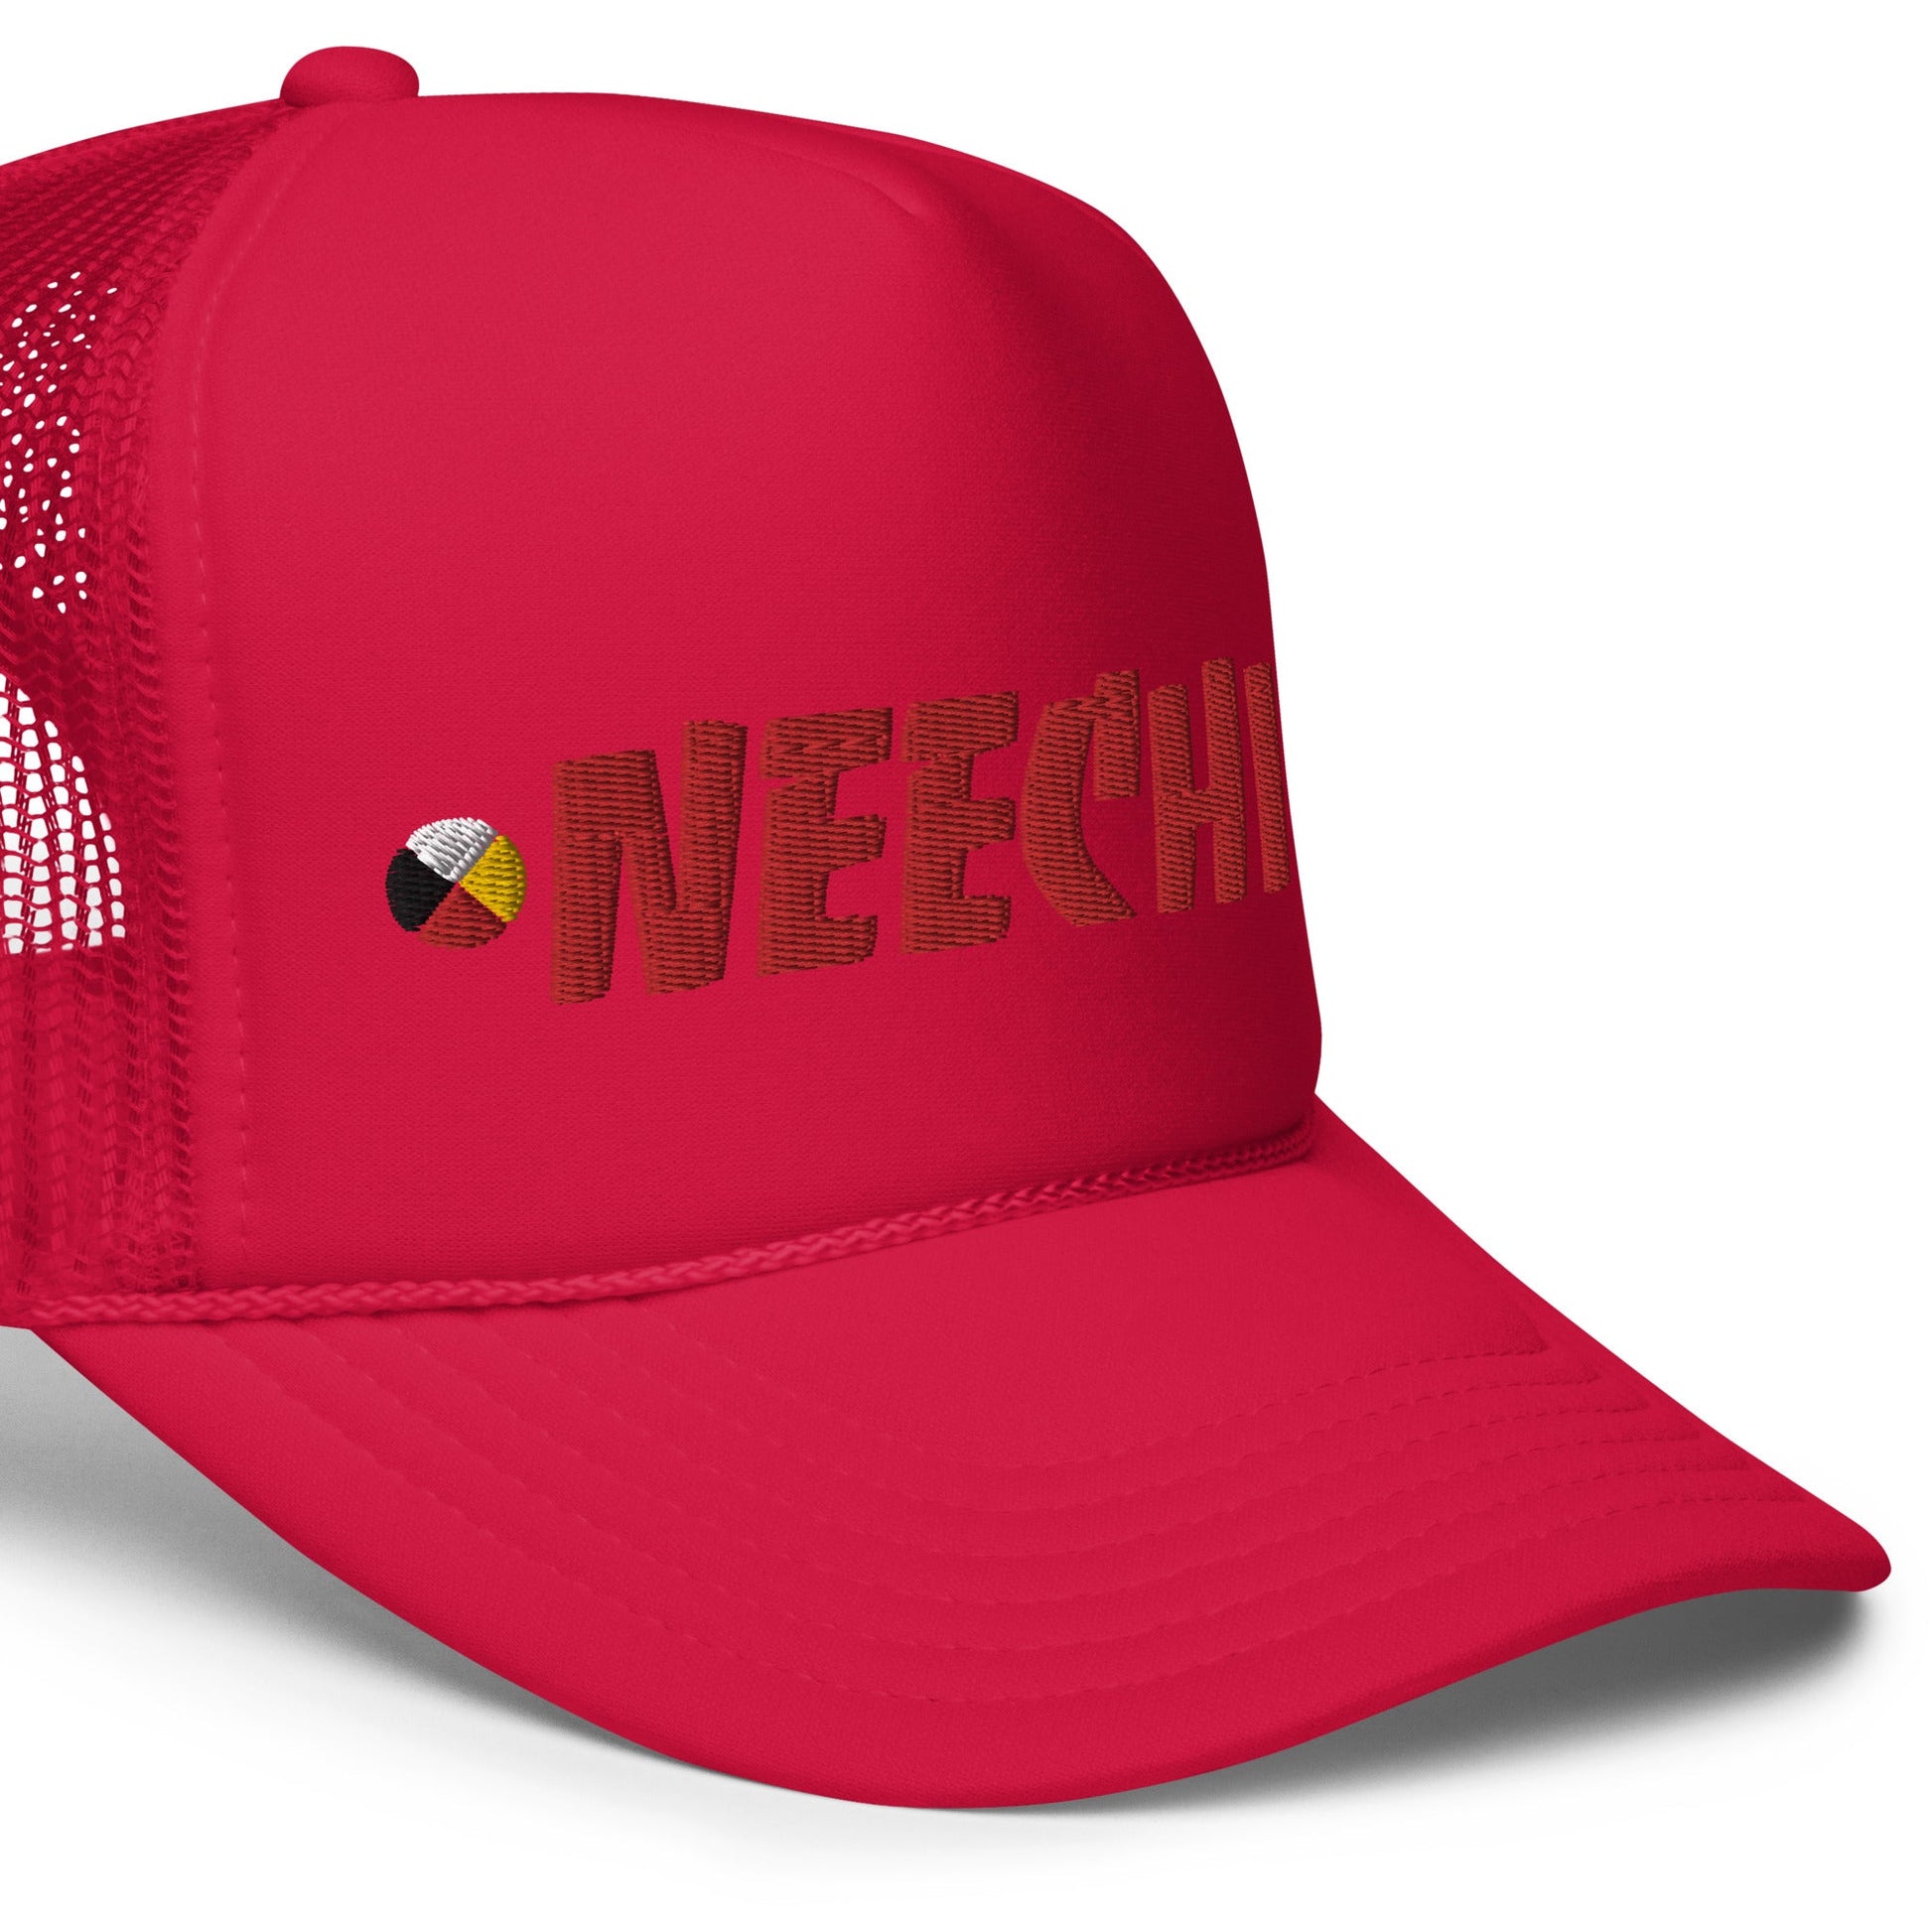 Neechie trucker hat - Nikikw Designs